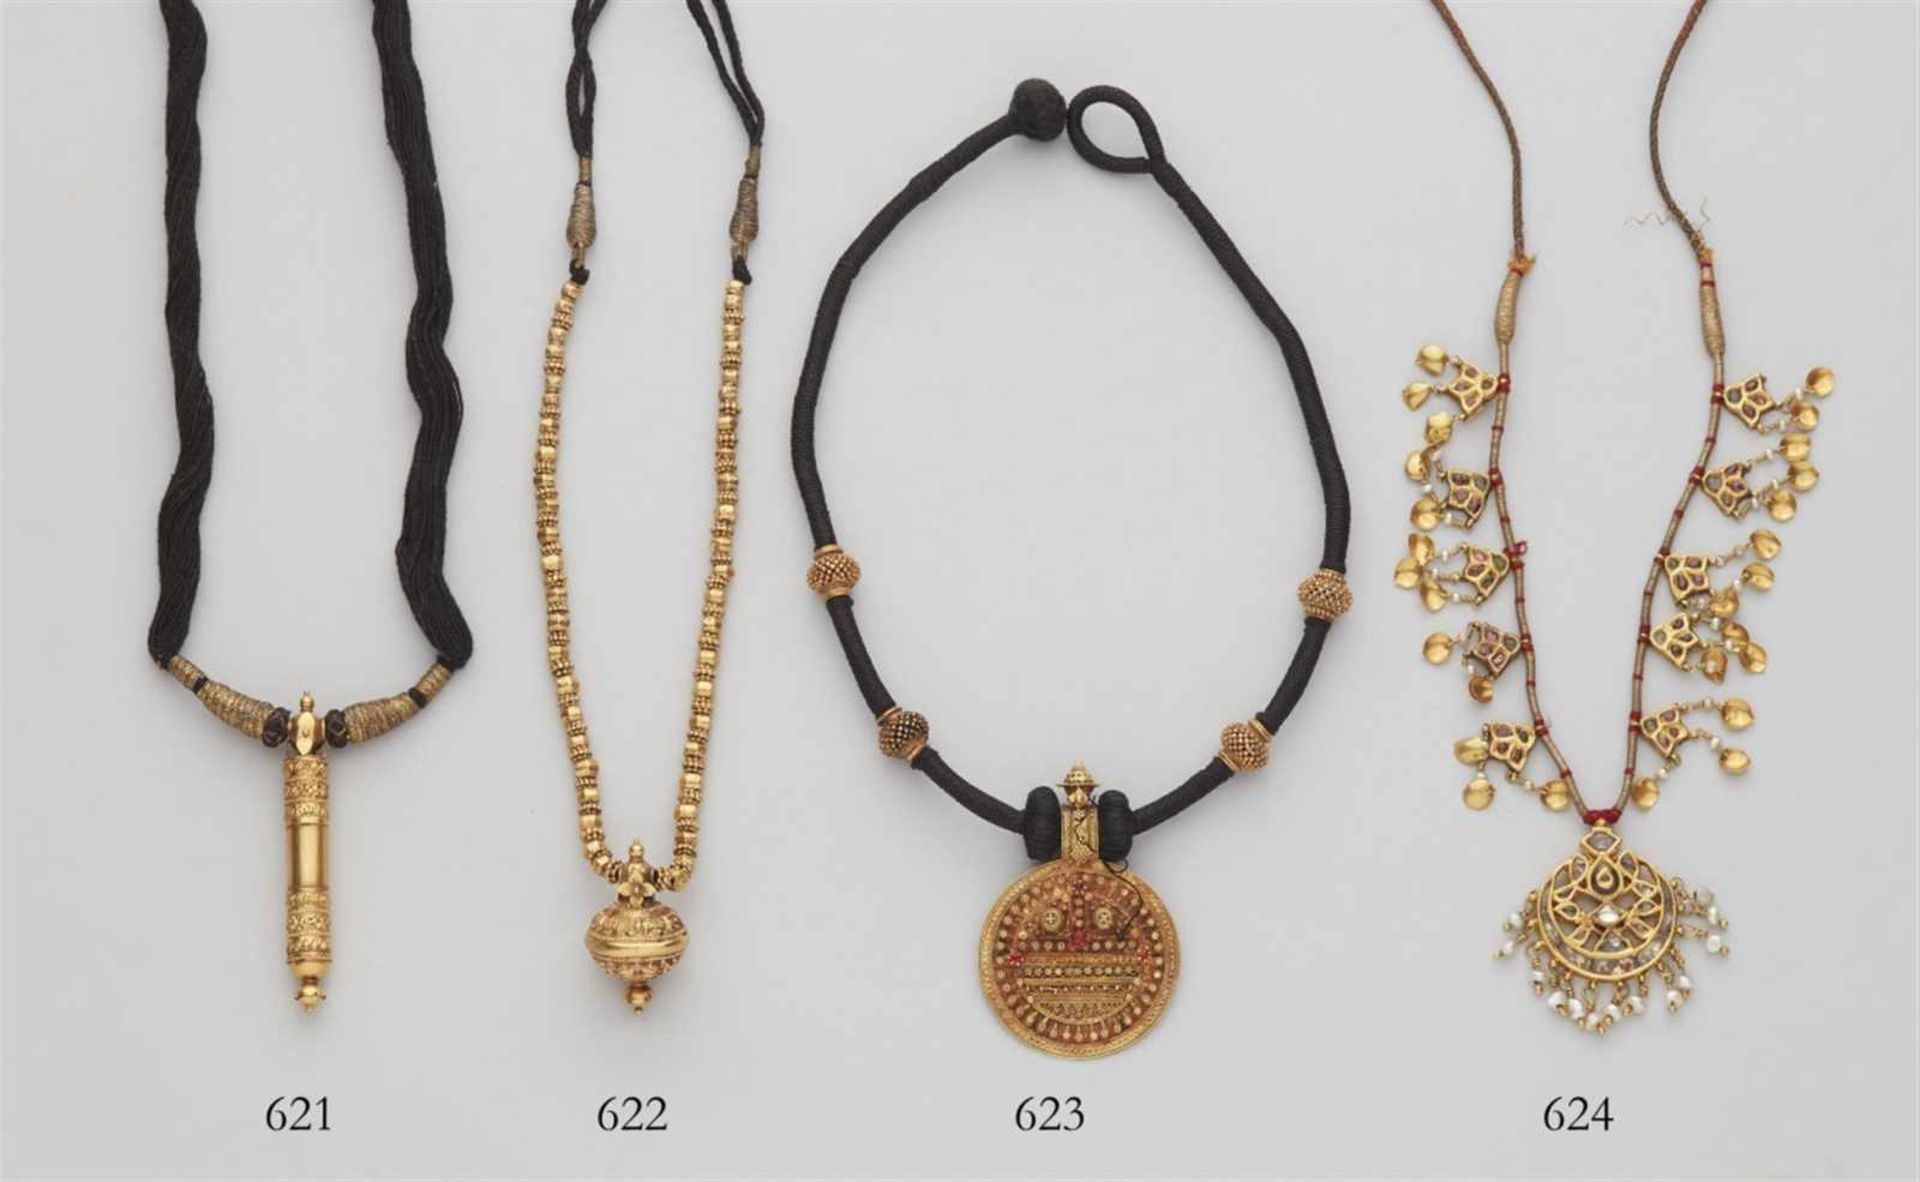 Halskette. Gold, Draht und Baumwolle. SüdindienMit einem kugelig-profilierten Anhänger (kuchcham)